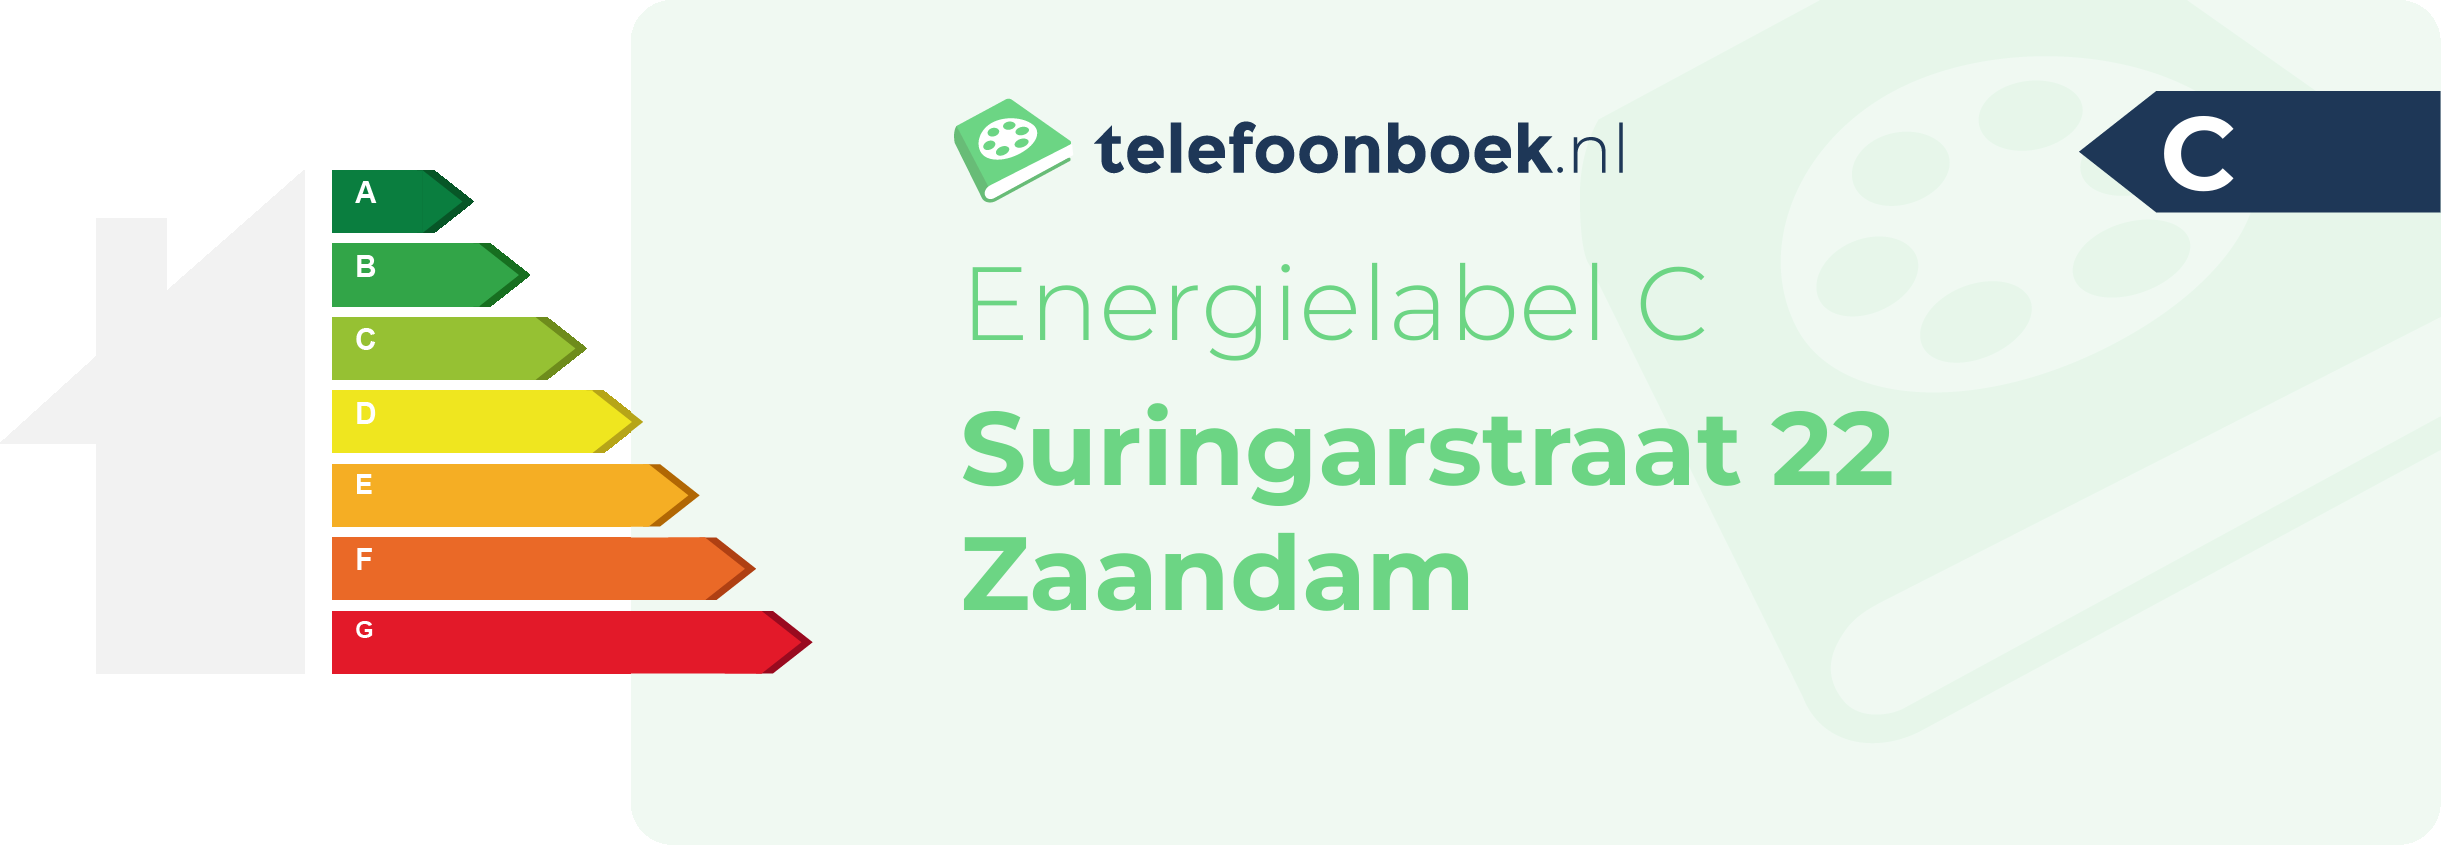 Energielabel Suringarstraat 22 Zaandam